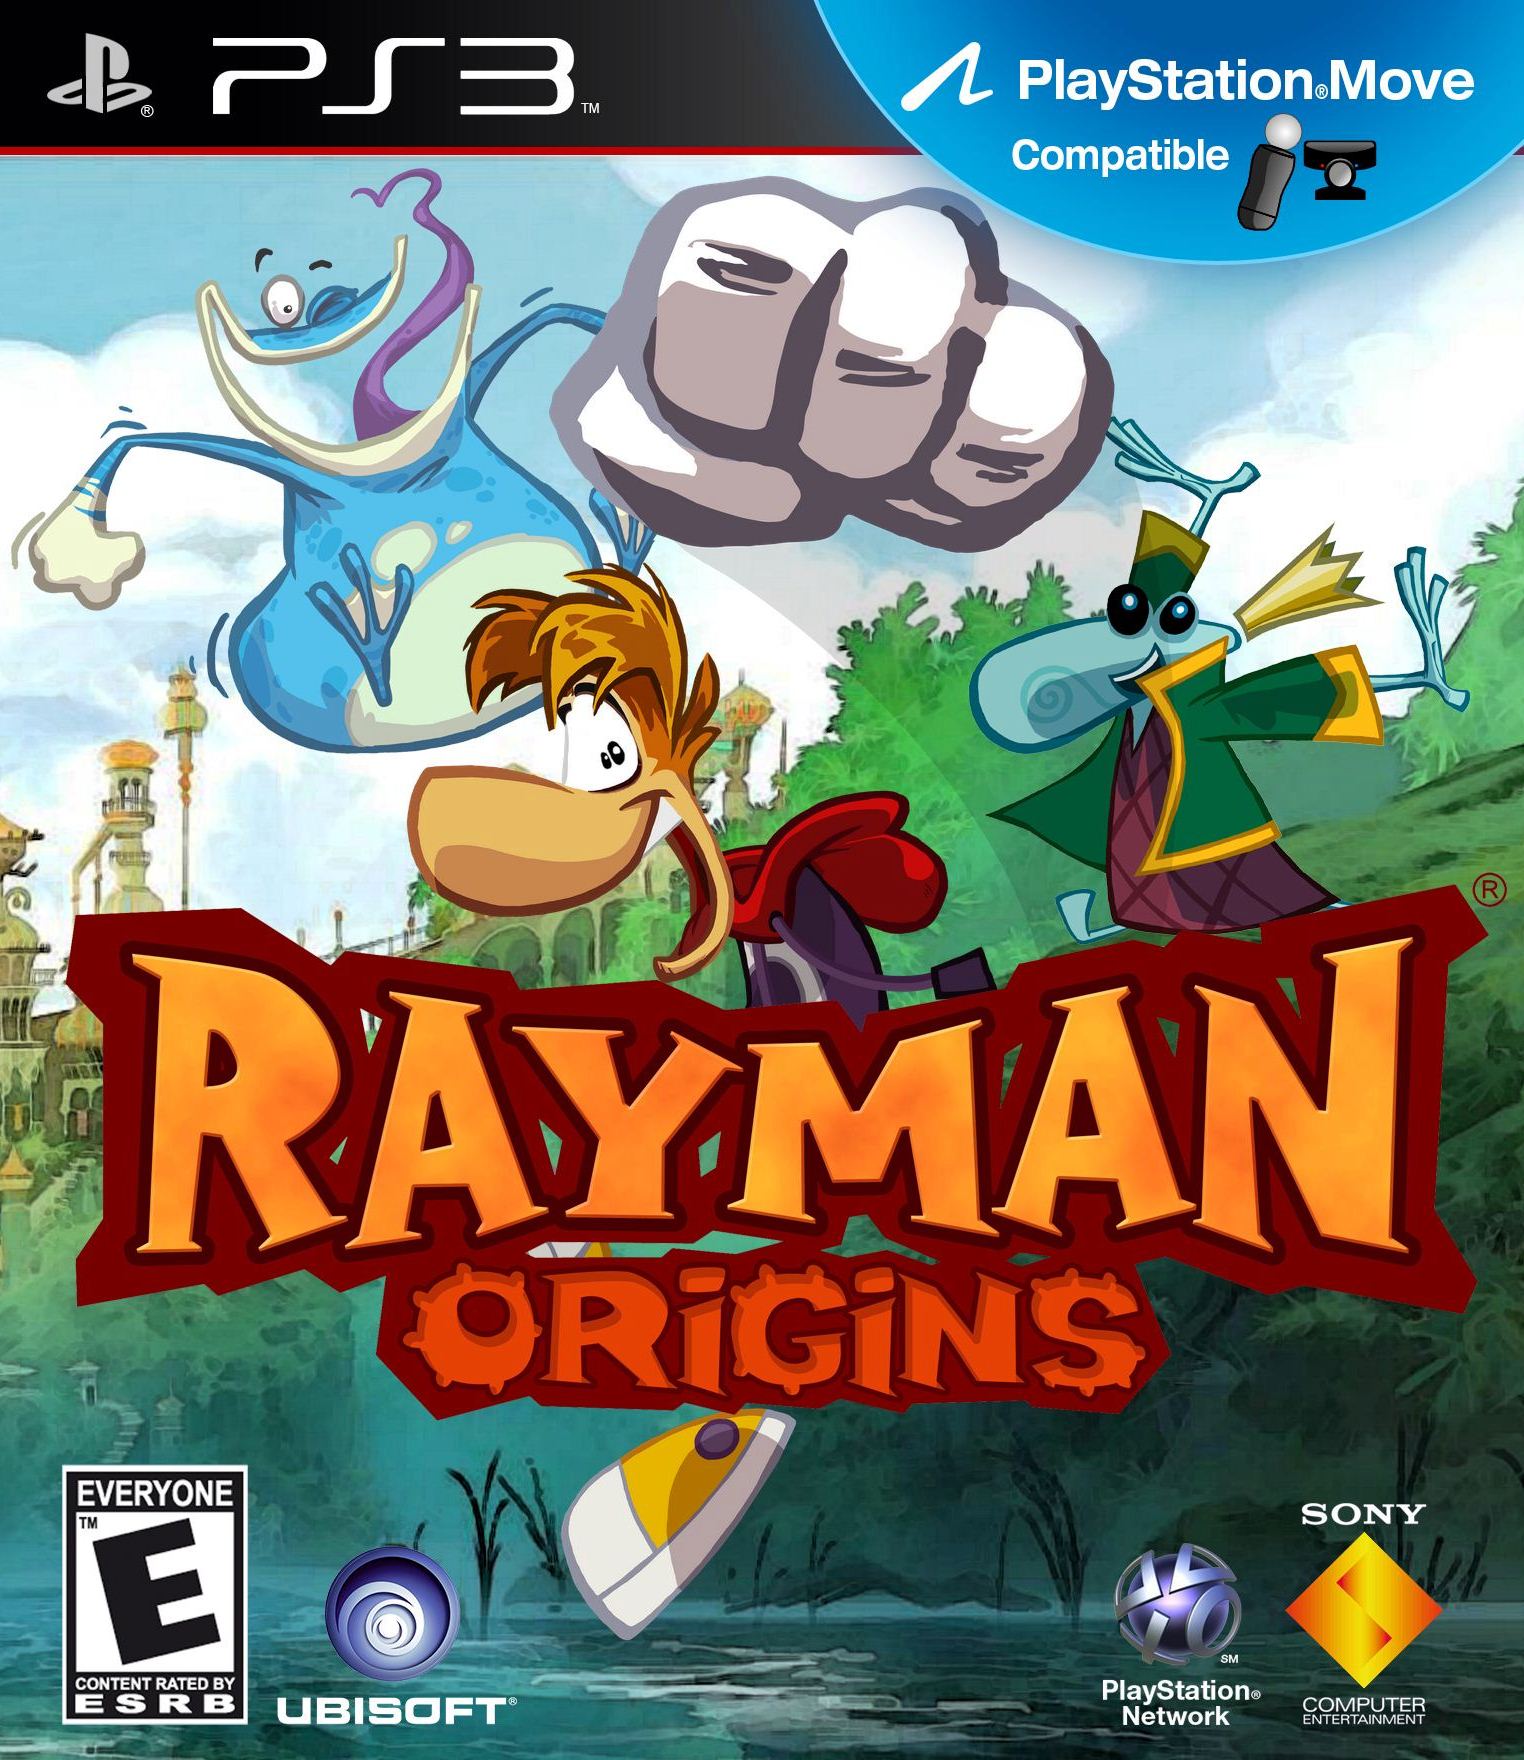 Rayman Origins [PS3, английская версия]